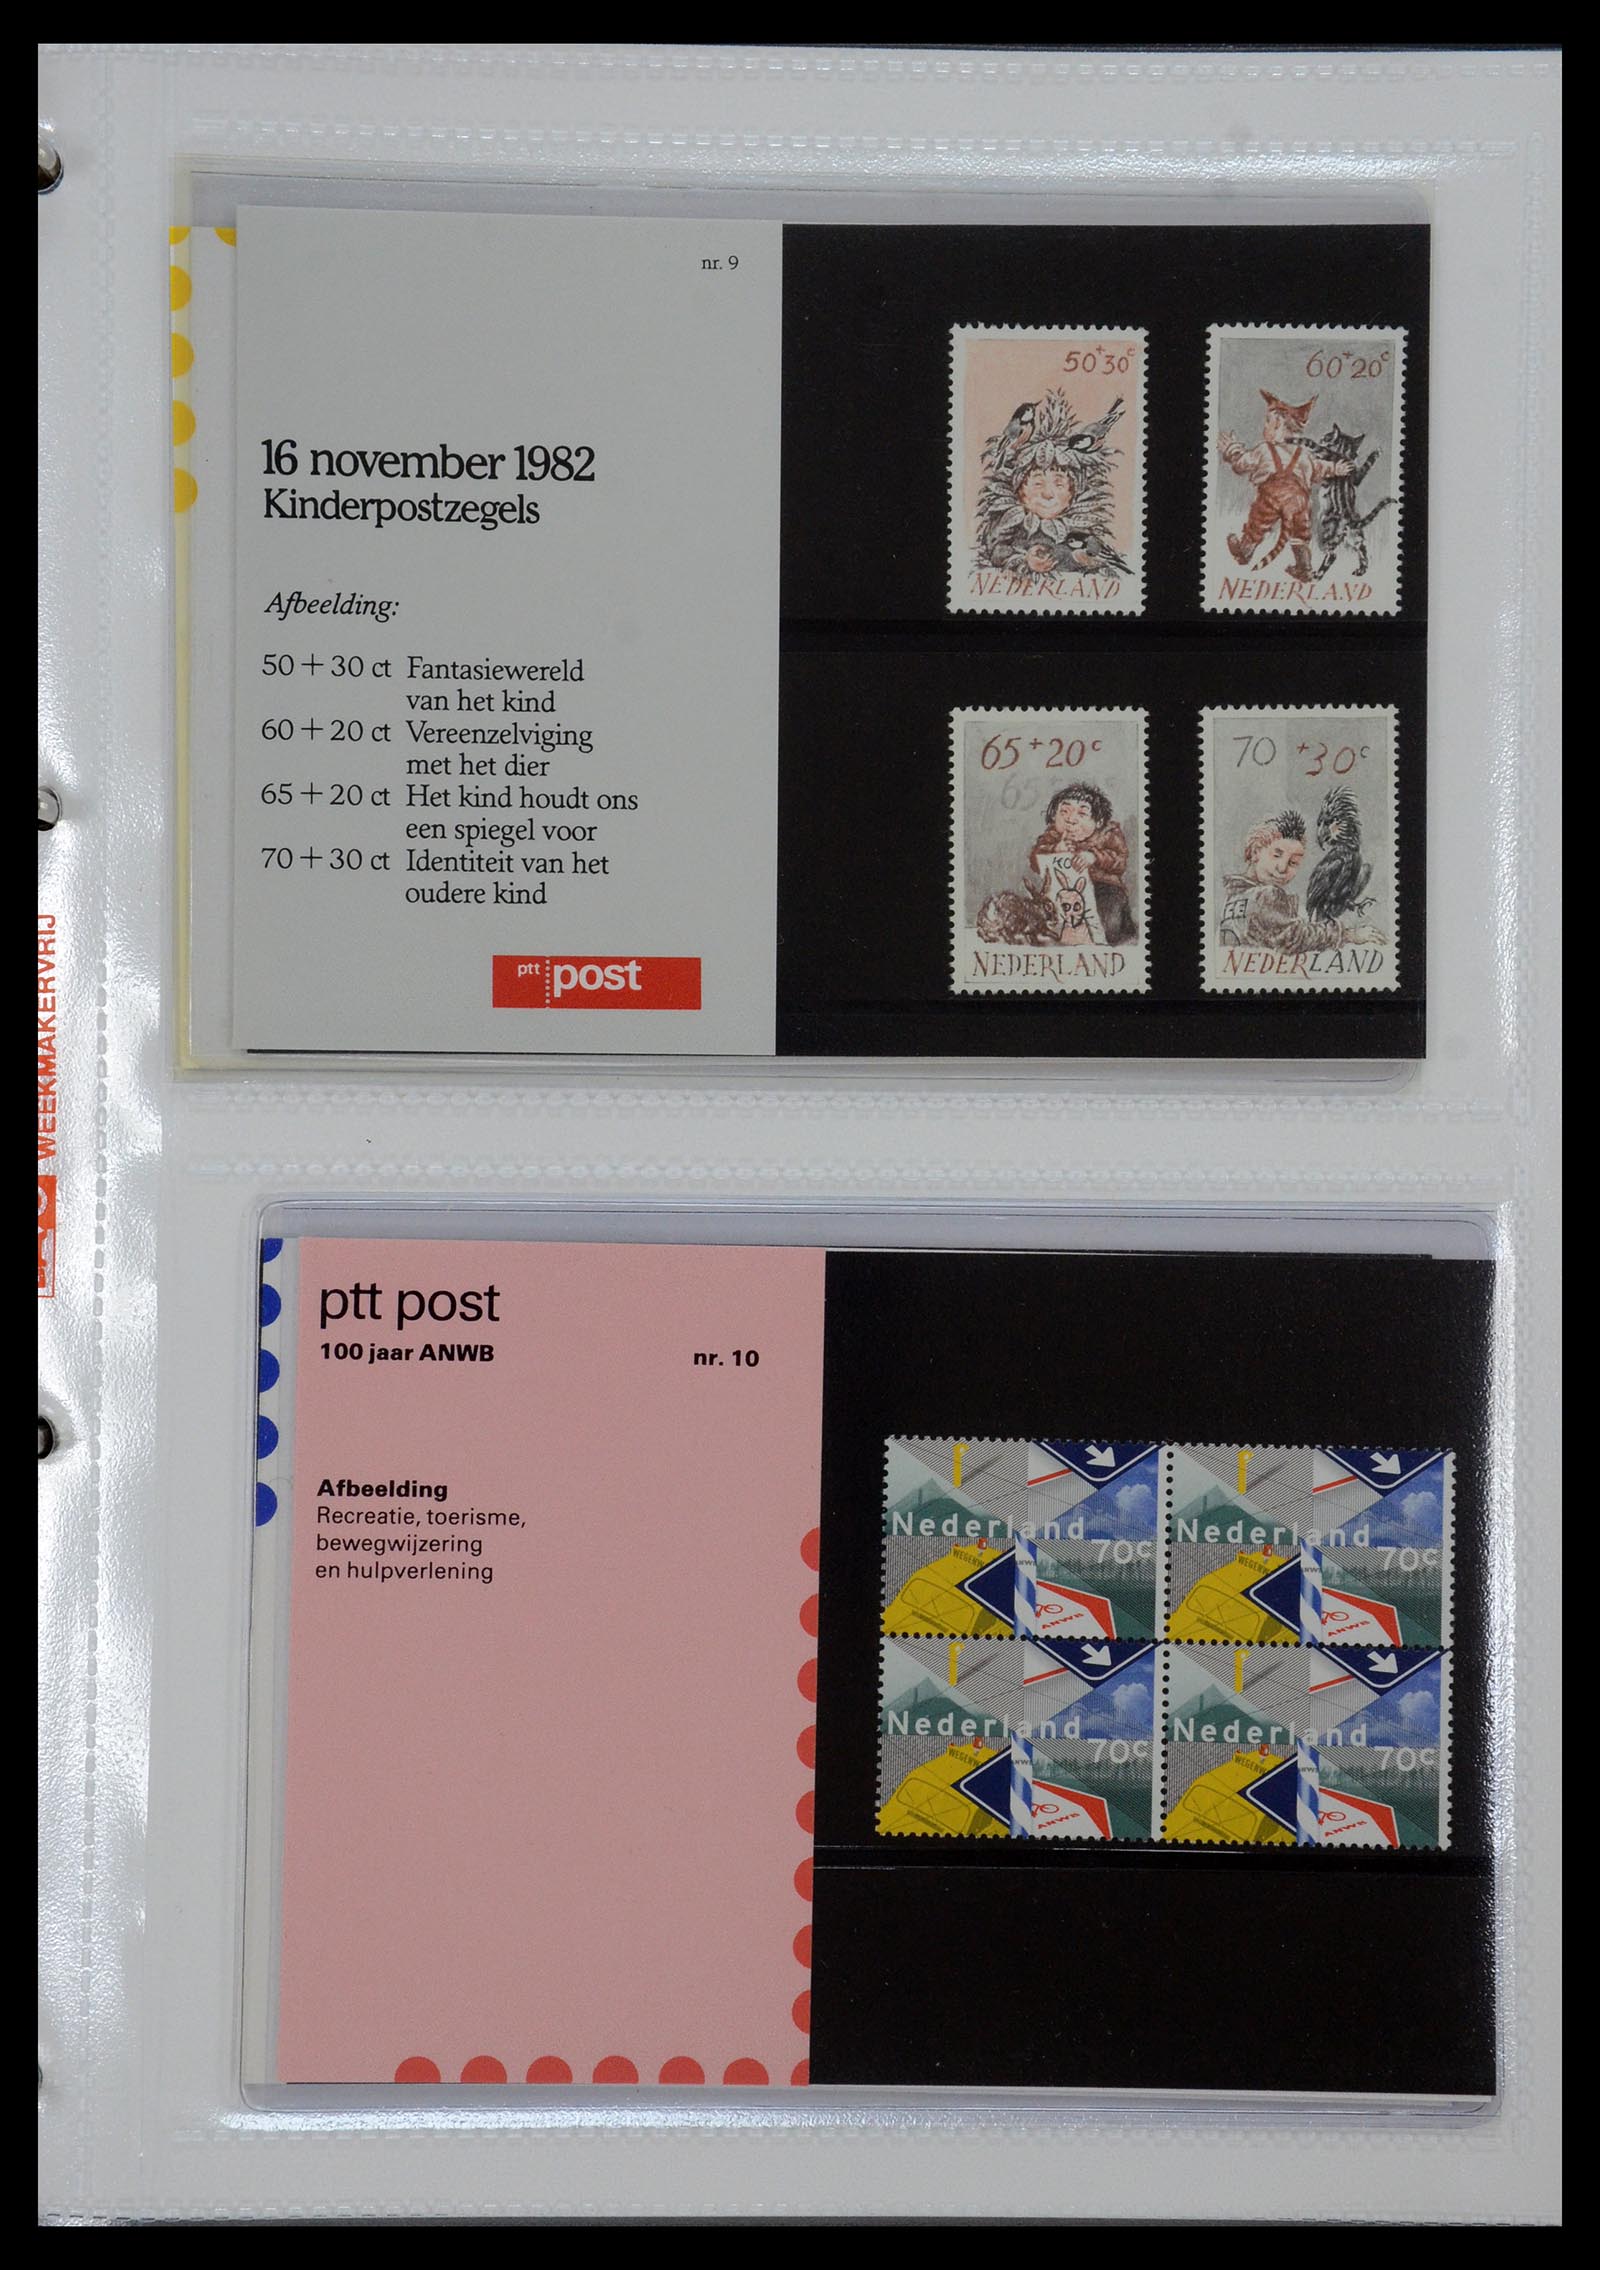 35144 005 - Stamp Collection 35144 Netherlands PTT presentation packs 1982-2021!